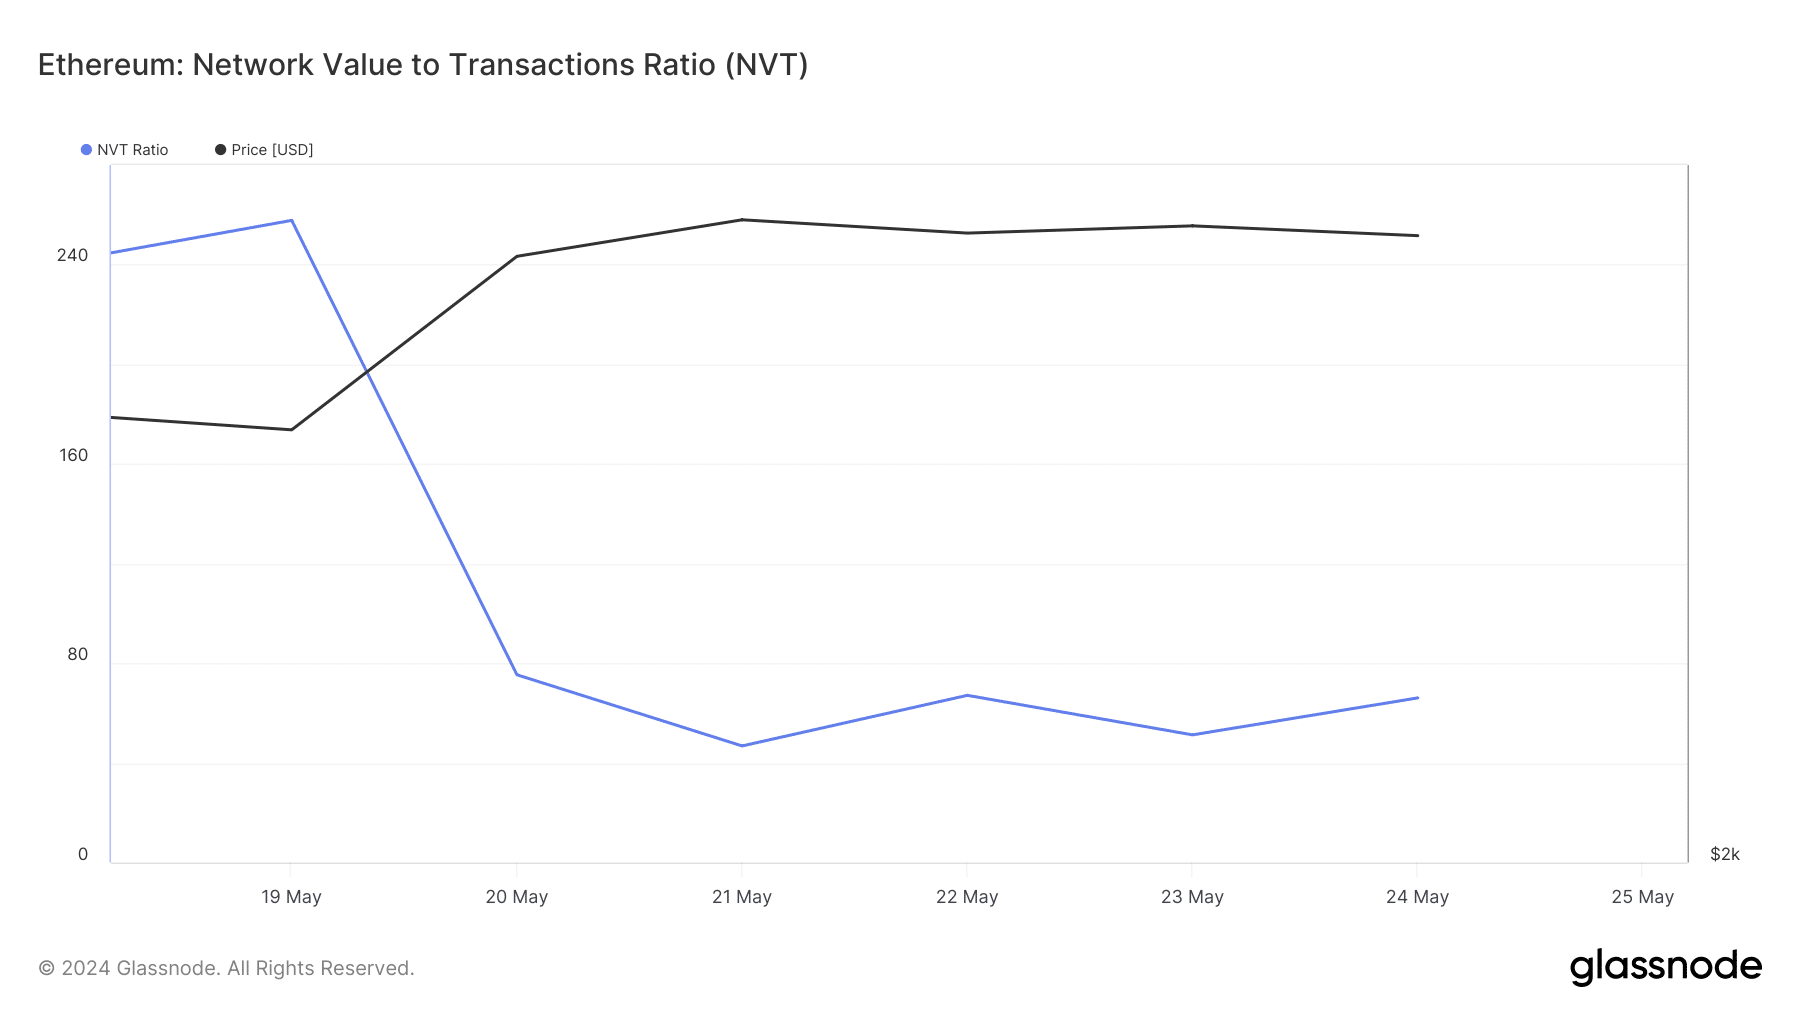 El ratio NVT de Ethereum cayó